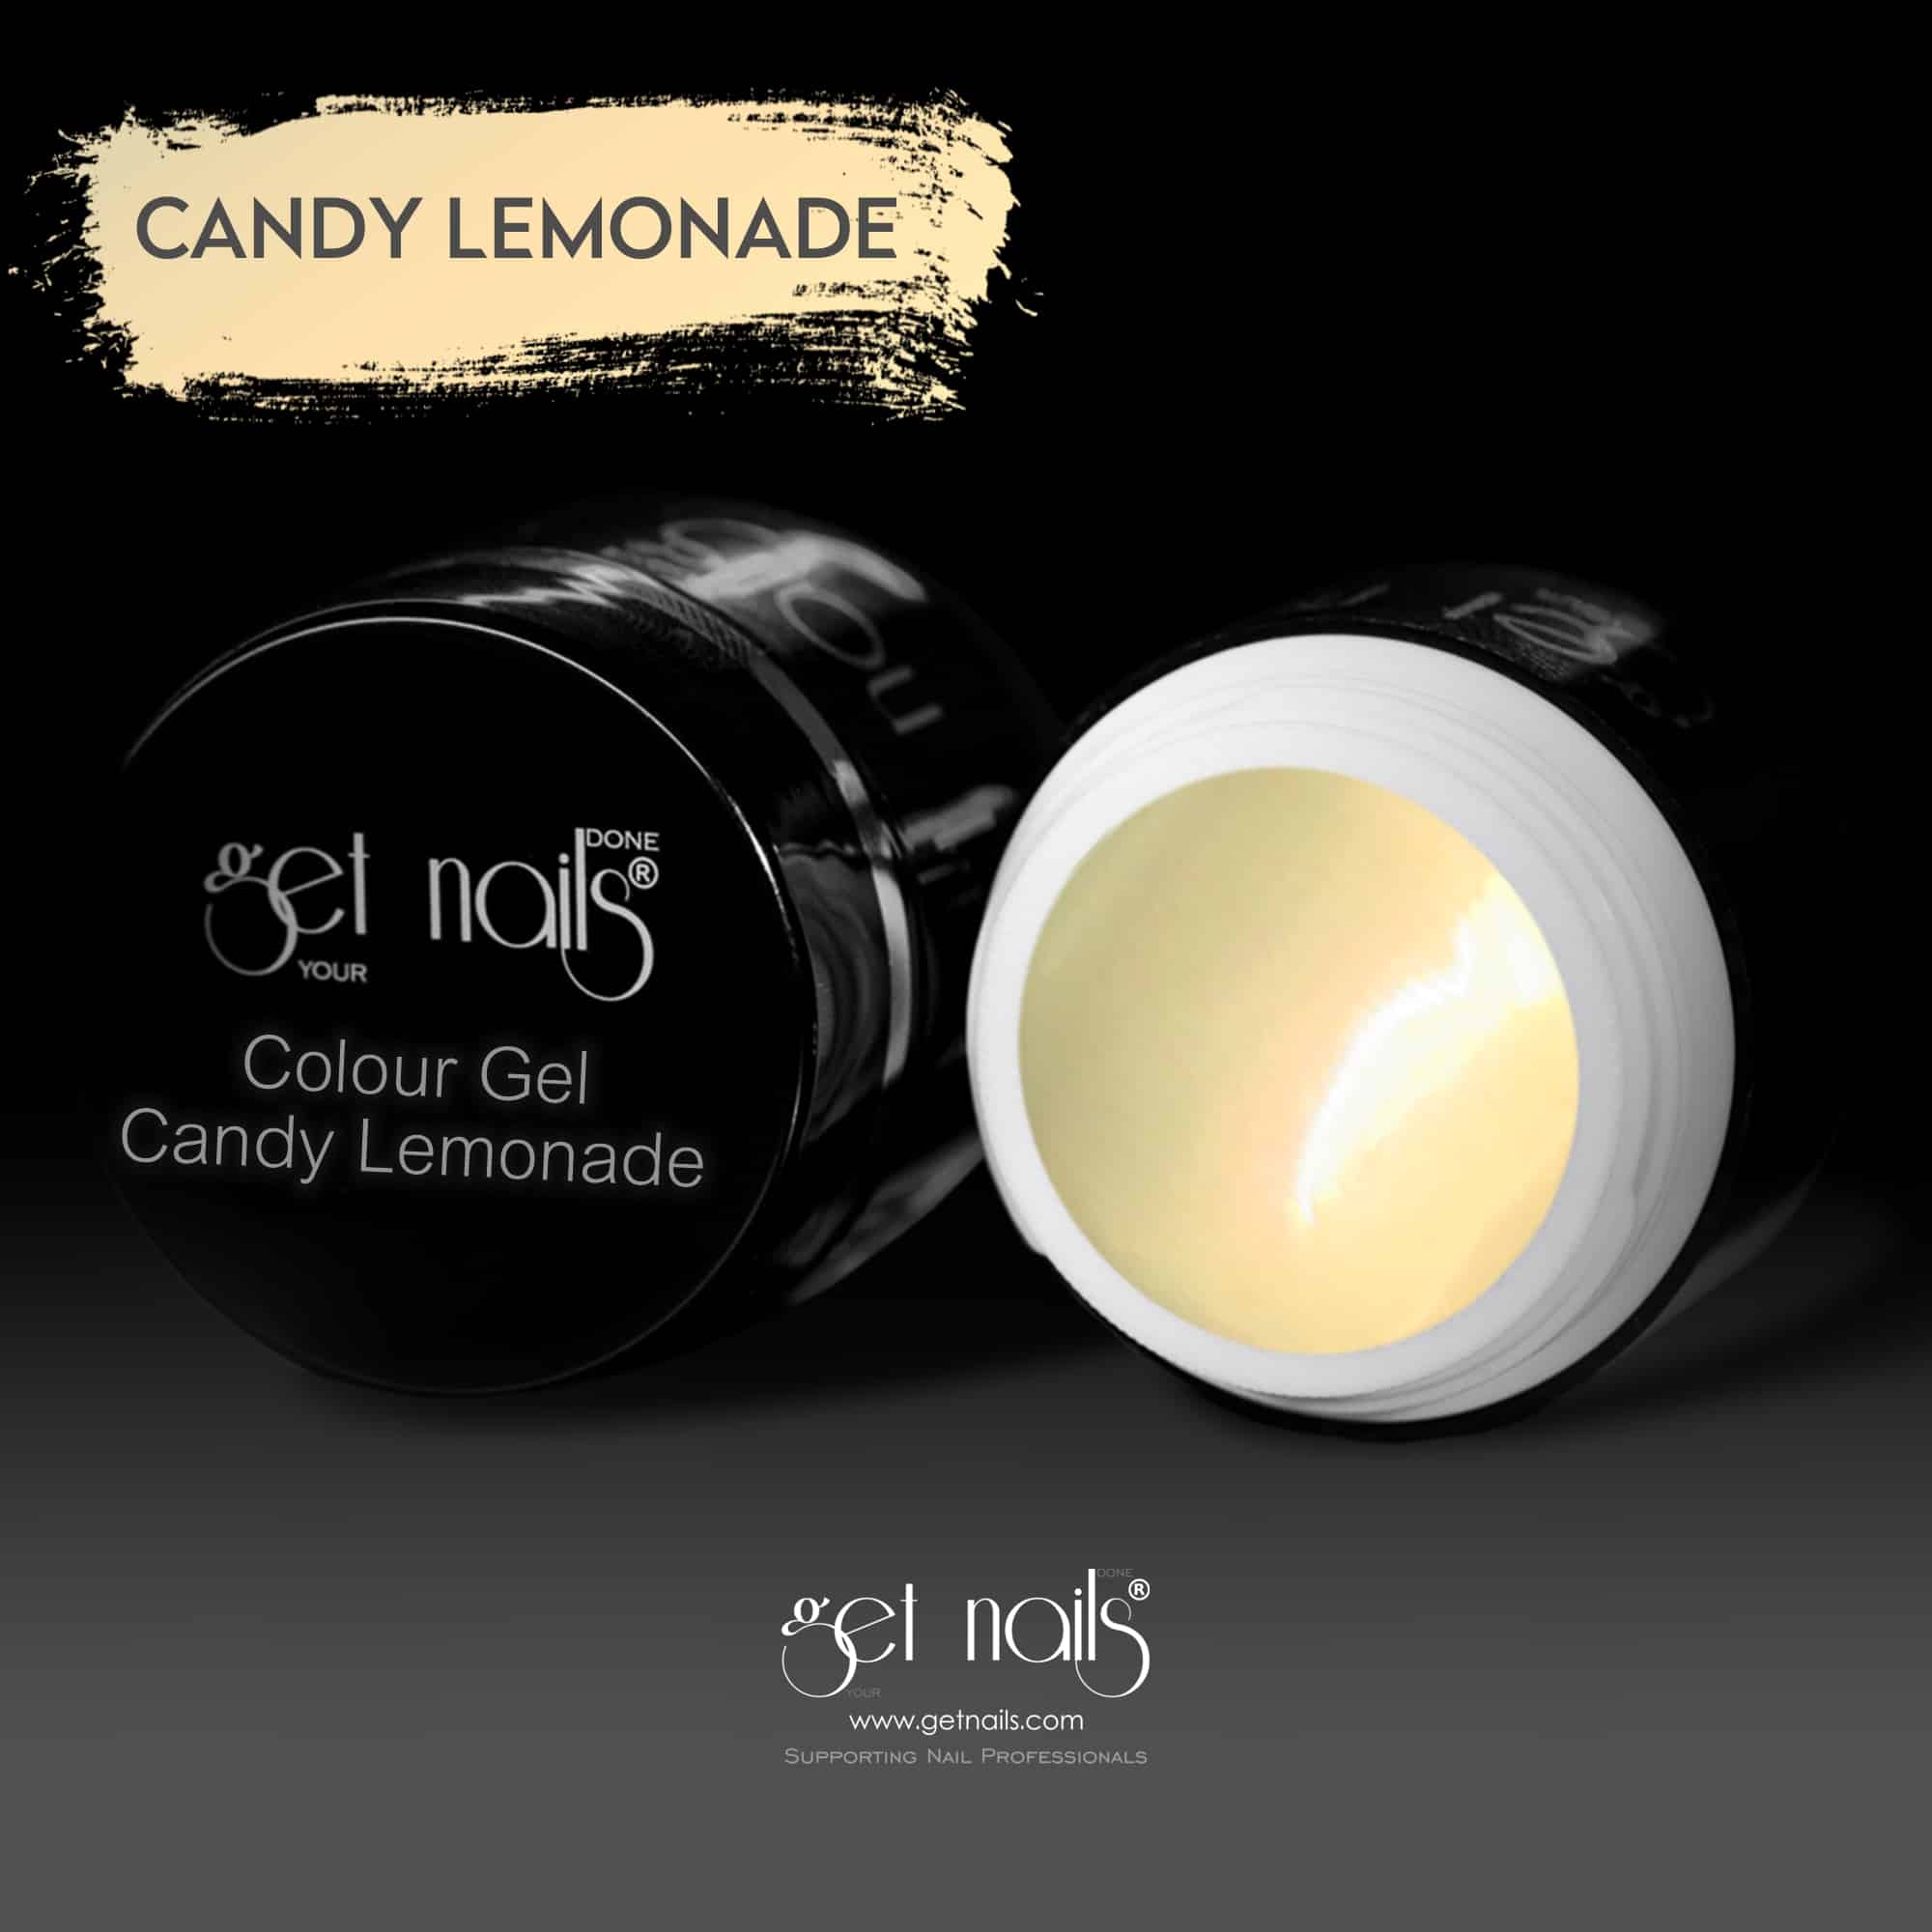 Get Nails Austria - Colour Gel Candy Lemonade 5g